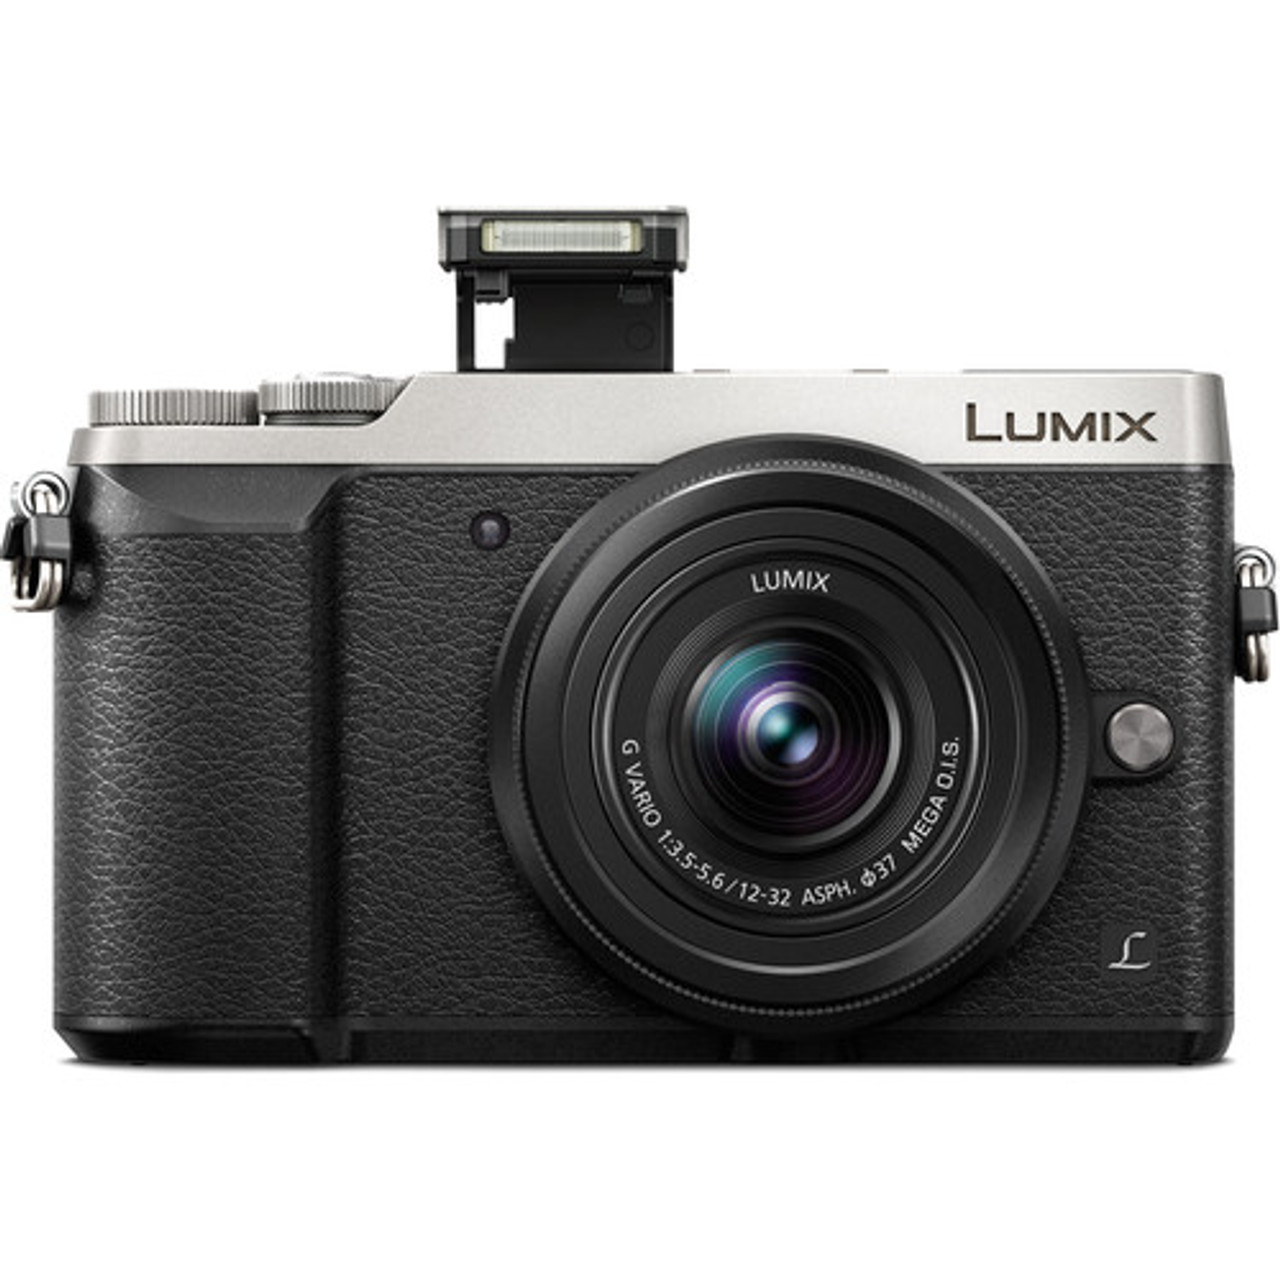 一番の贈り物 LUMIX G ace デジタルカメラ - bienvenuechezvous.be